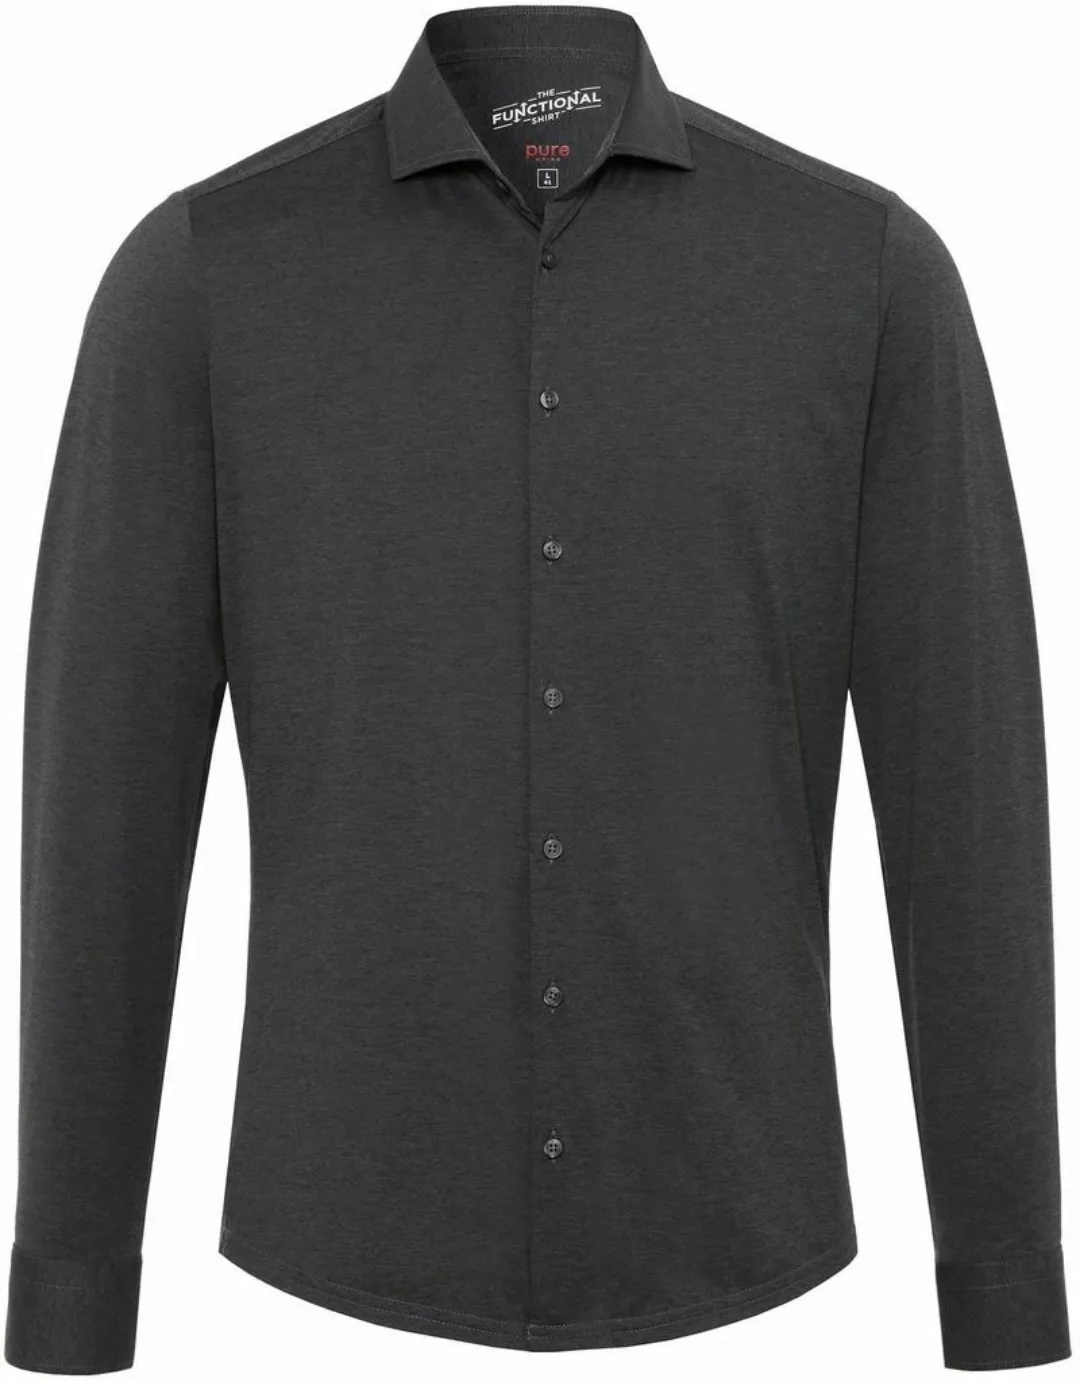 Pure H.Tico The Functional Dunkel Grau Shirt - Größe 40 günstig online kaufen